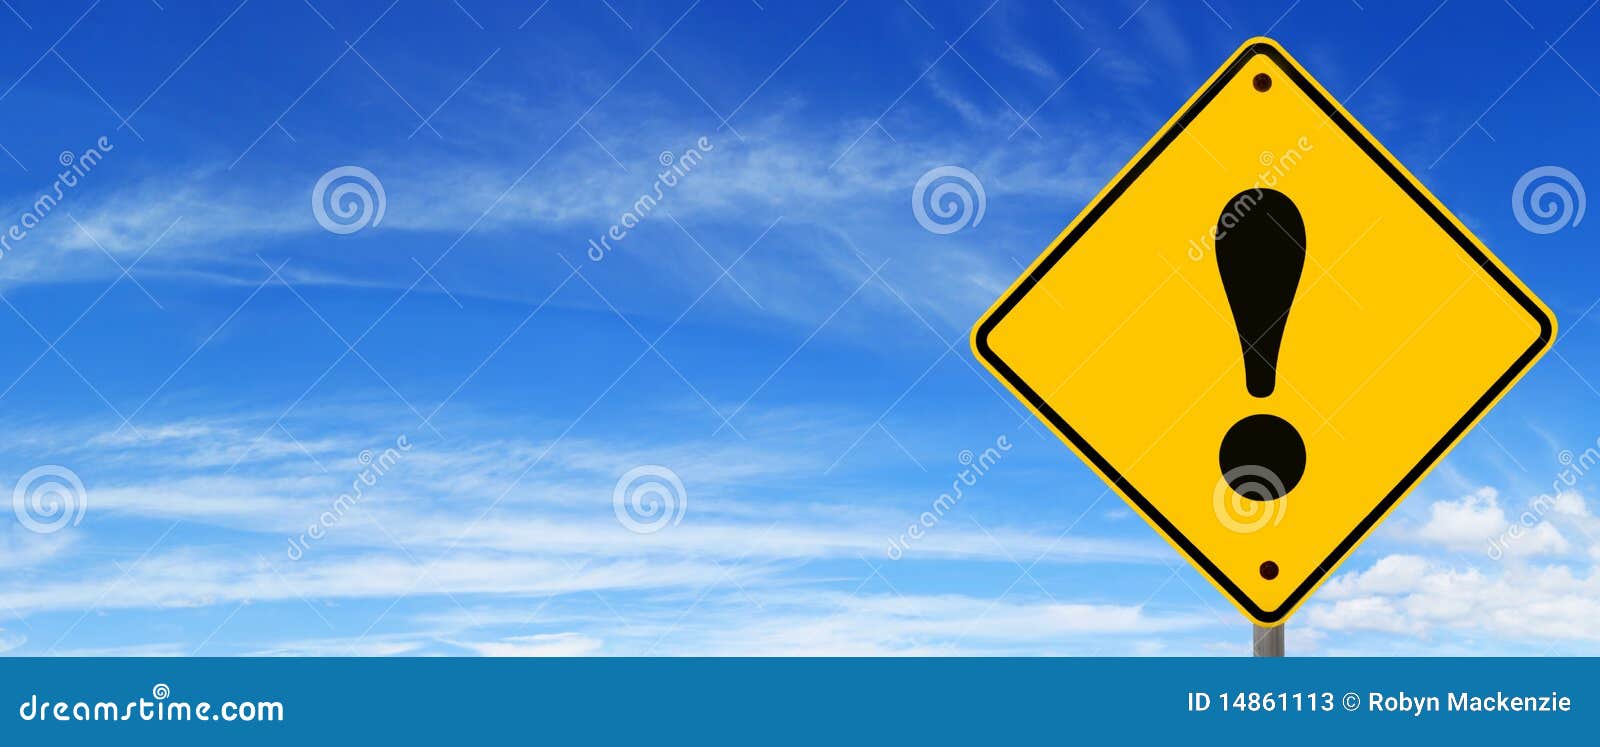 road sign warning